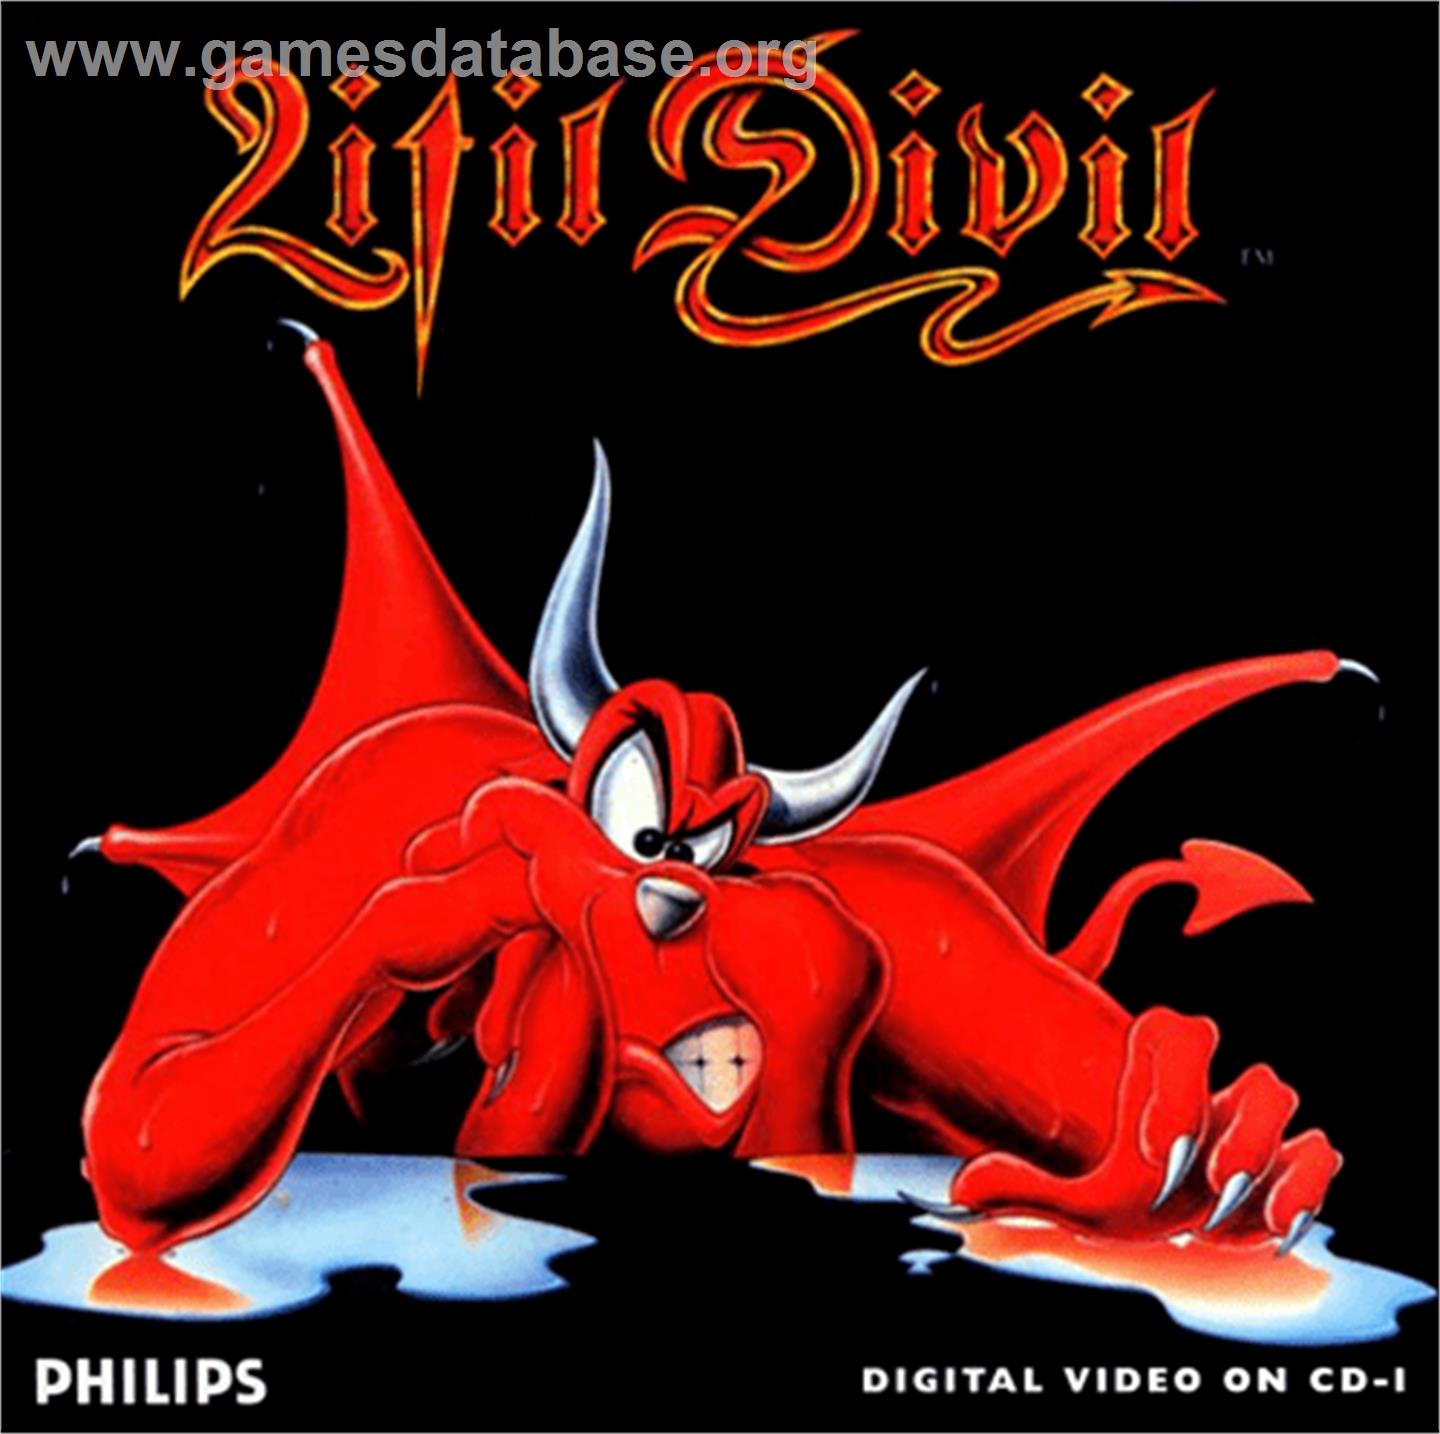 Litil Divil - Philips CD-i - Artwork - Box